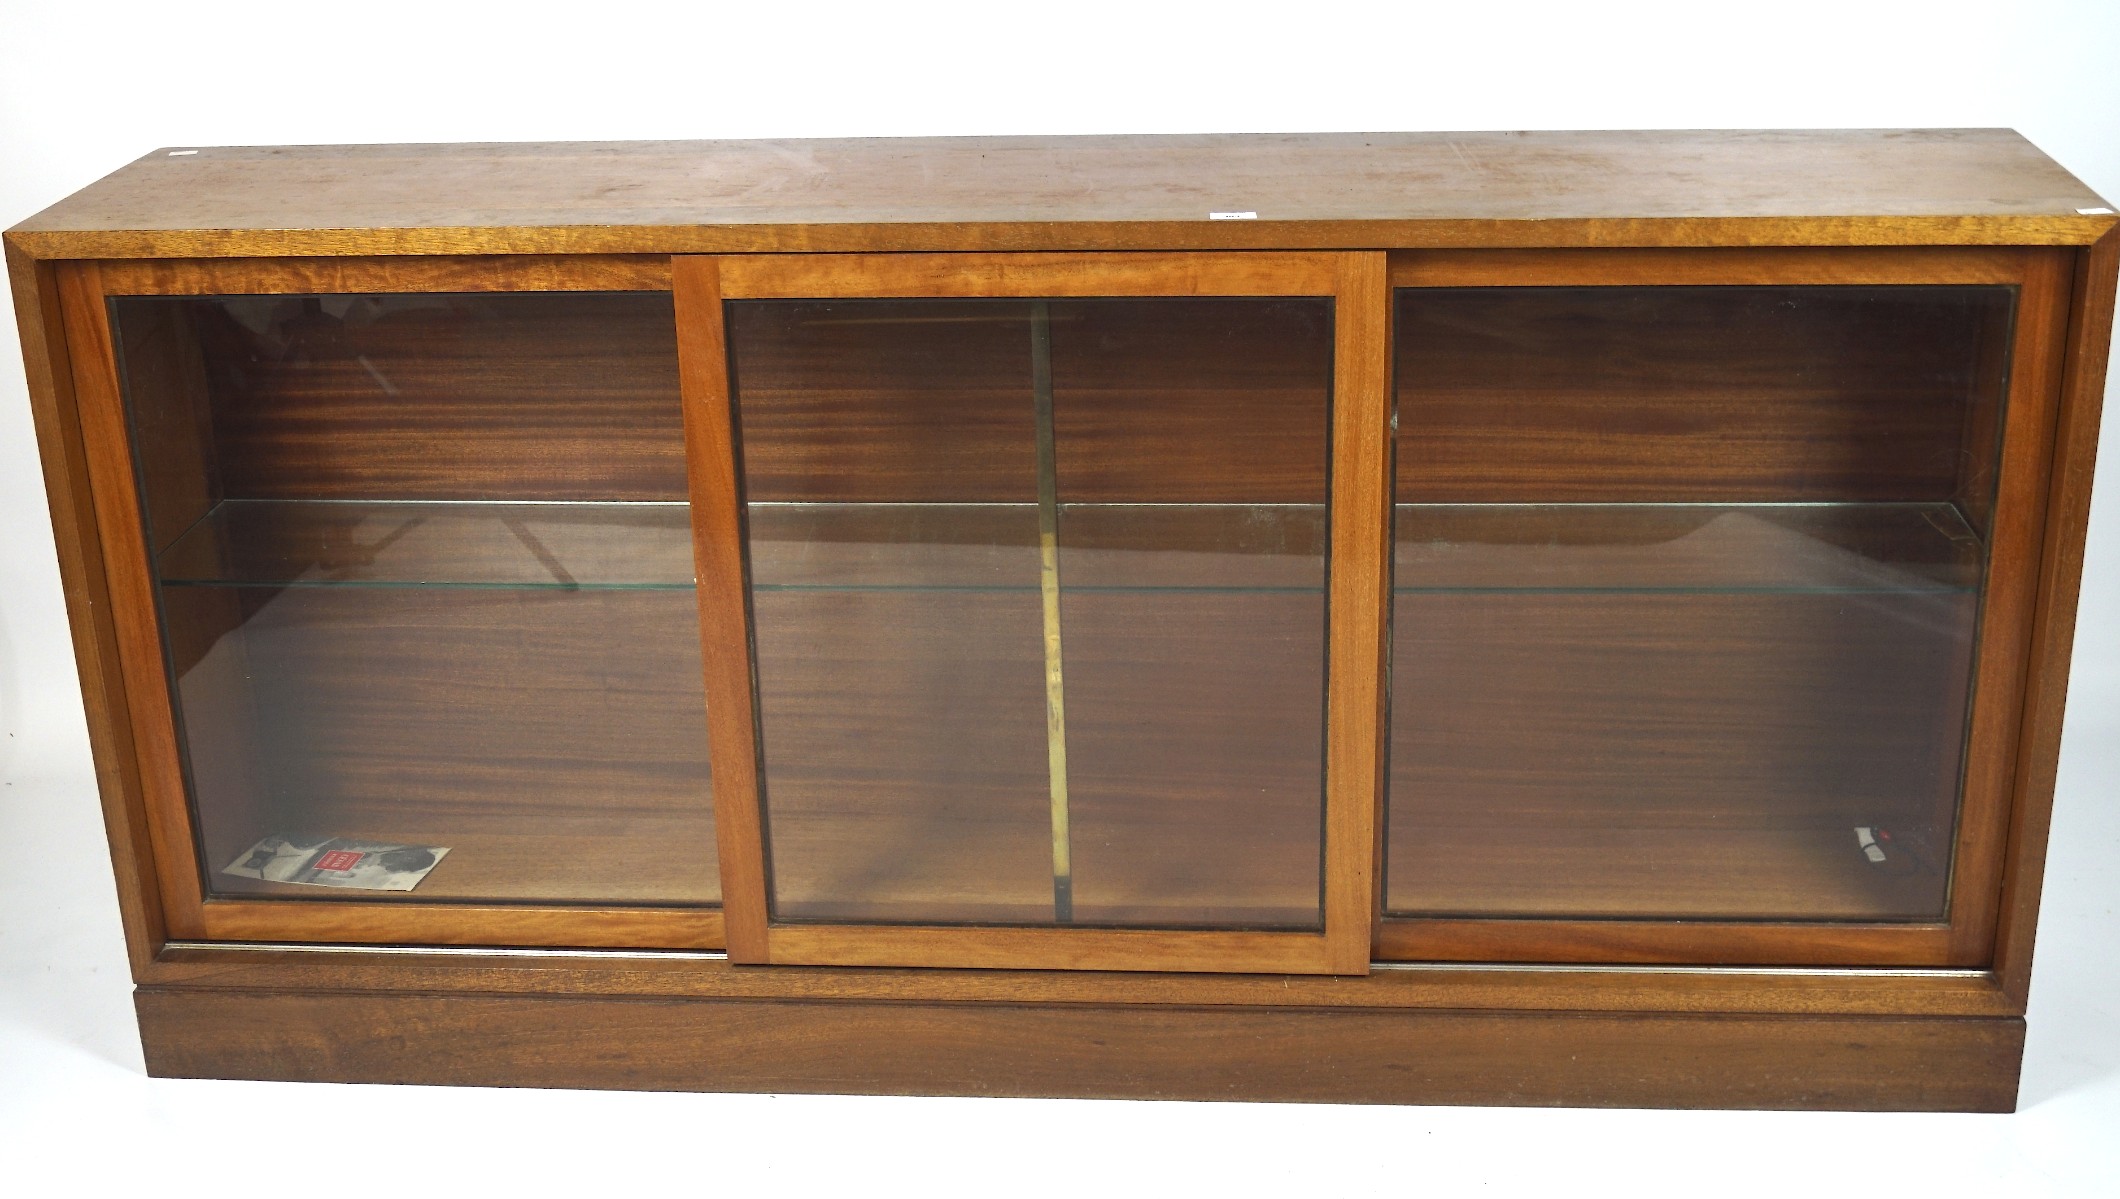 A 20th century mahogany veneered glazed display cabinet,